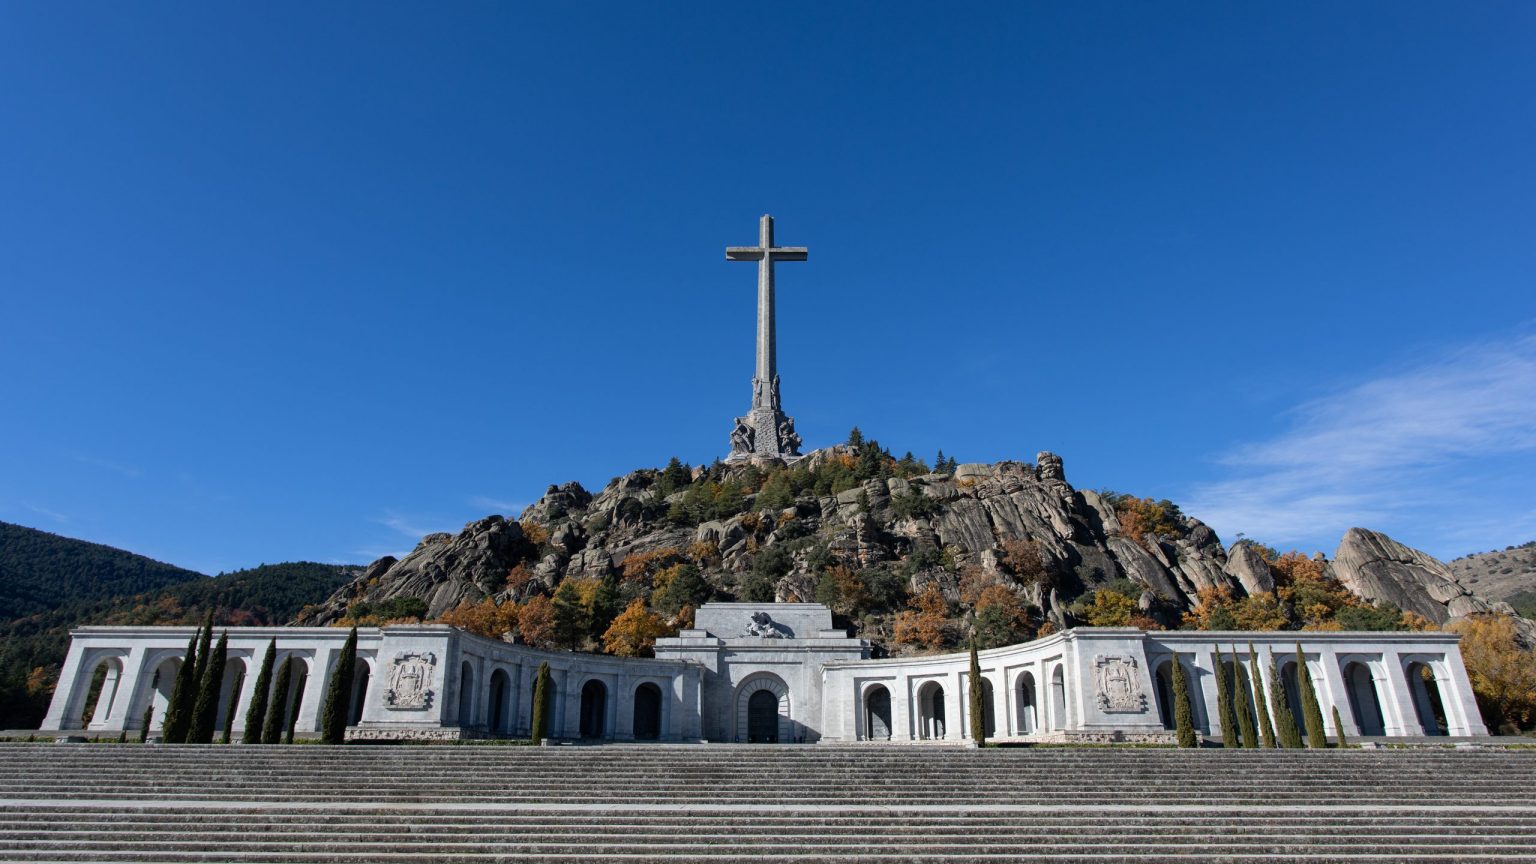 El Gobierno cerca a los monjes del Valle de los Caídos: los deja sin agua «por una negligencia»